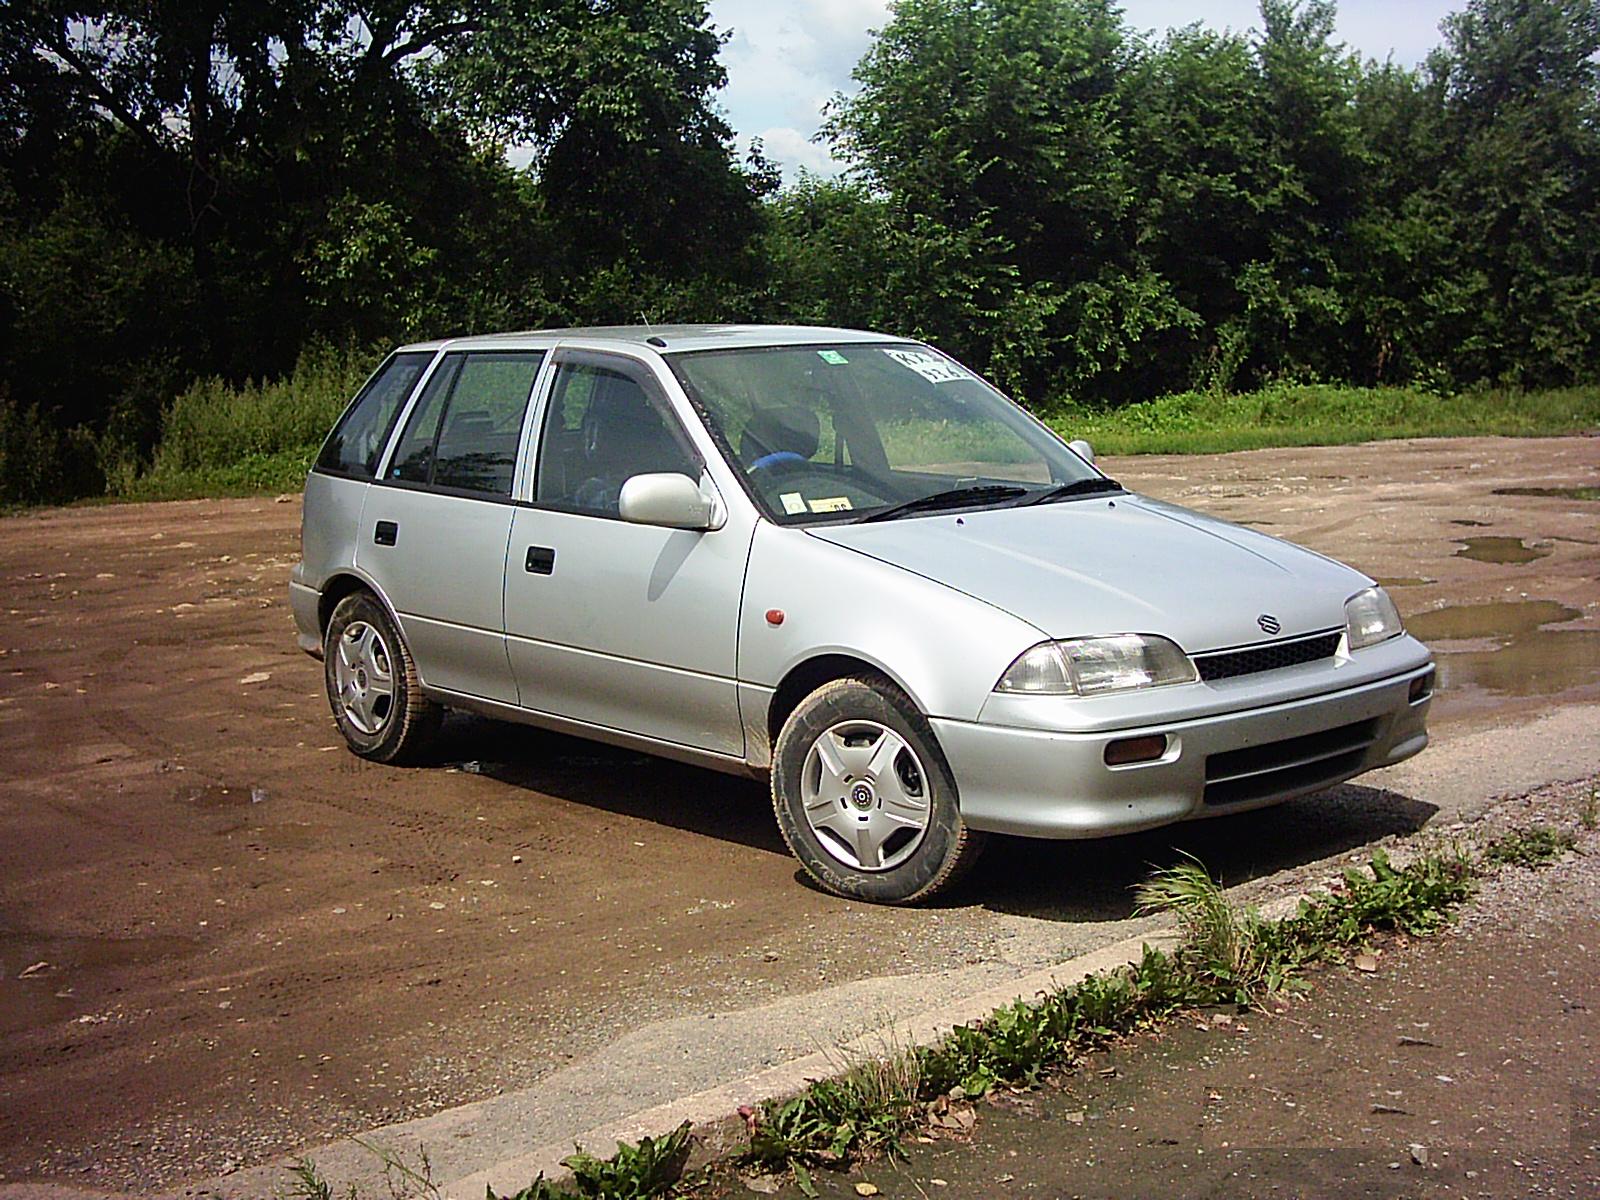 1998 Suzuki Cultus specs, Engine size 1300cm3, Fuel type Gasoline